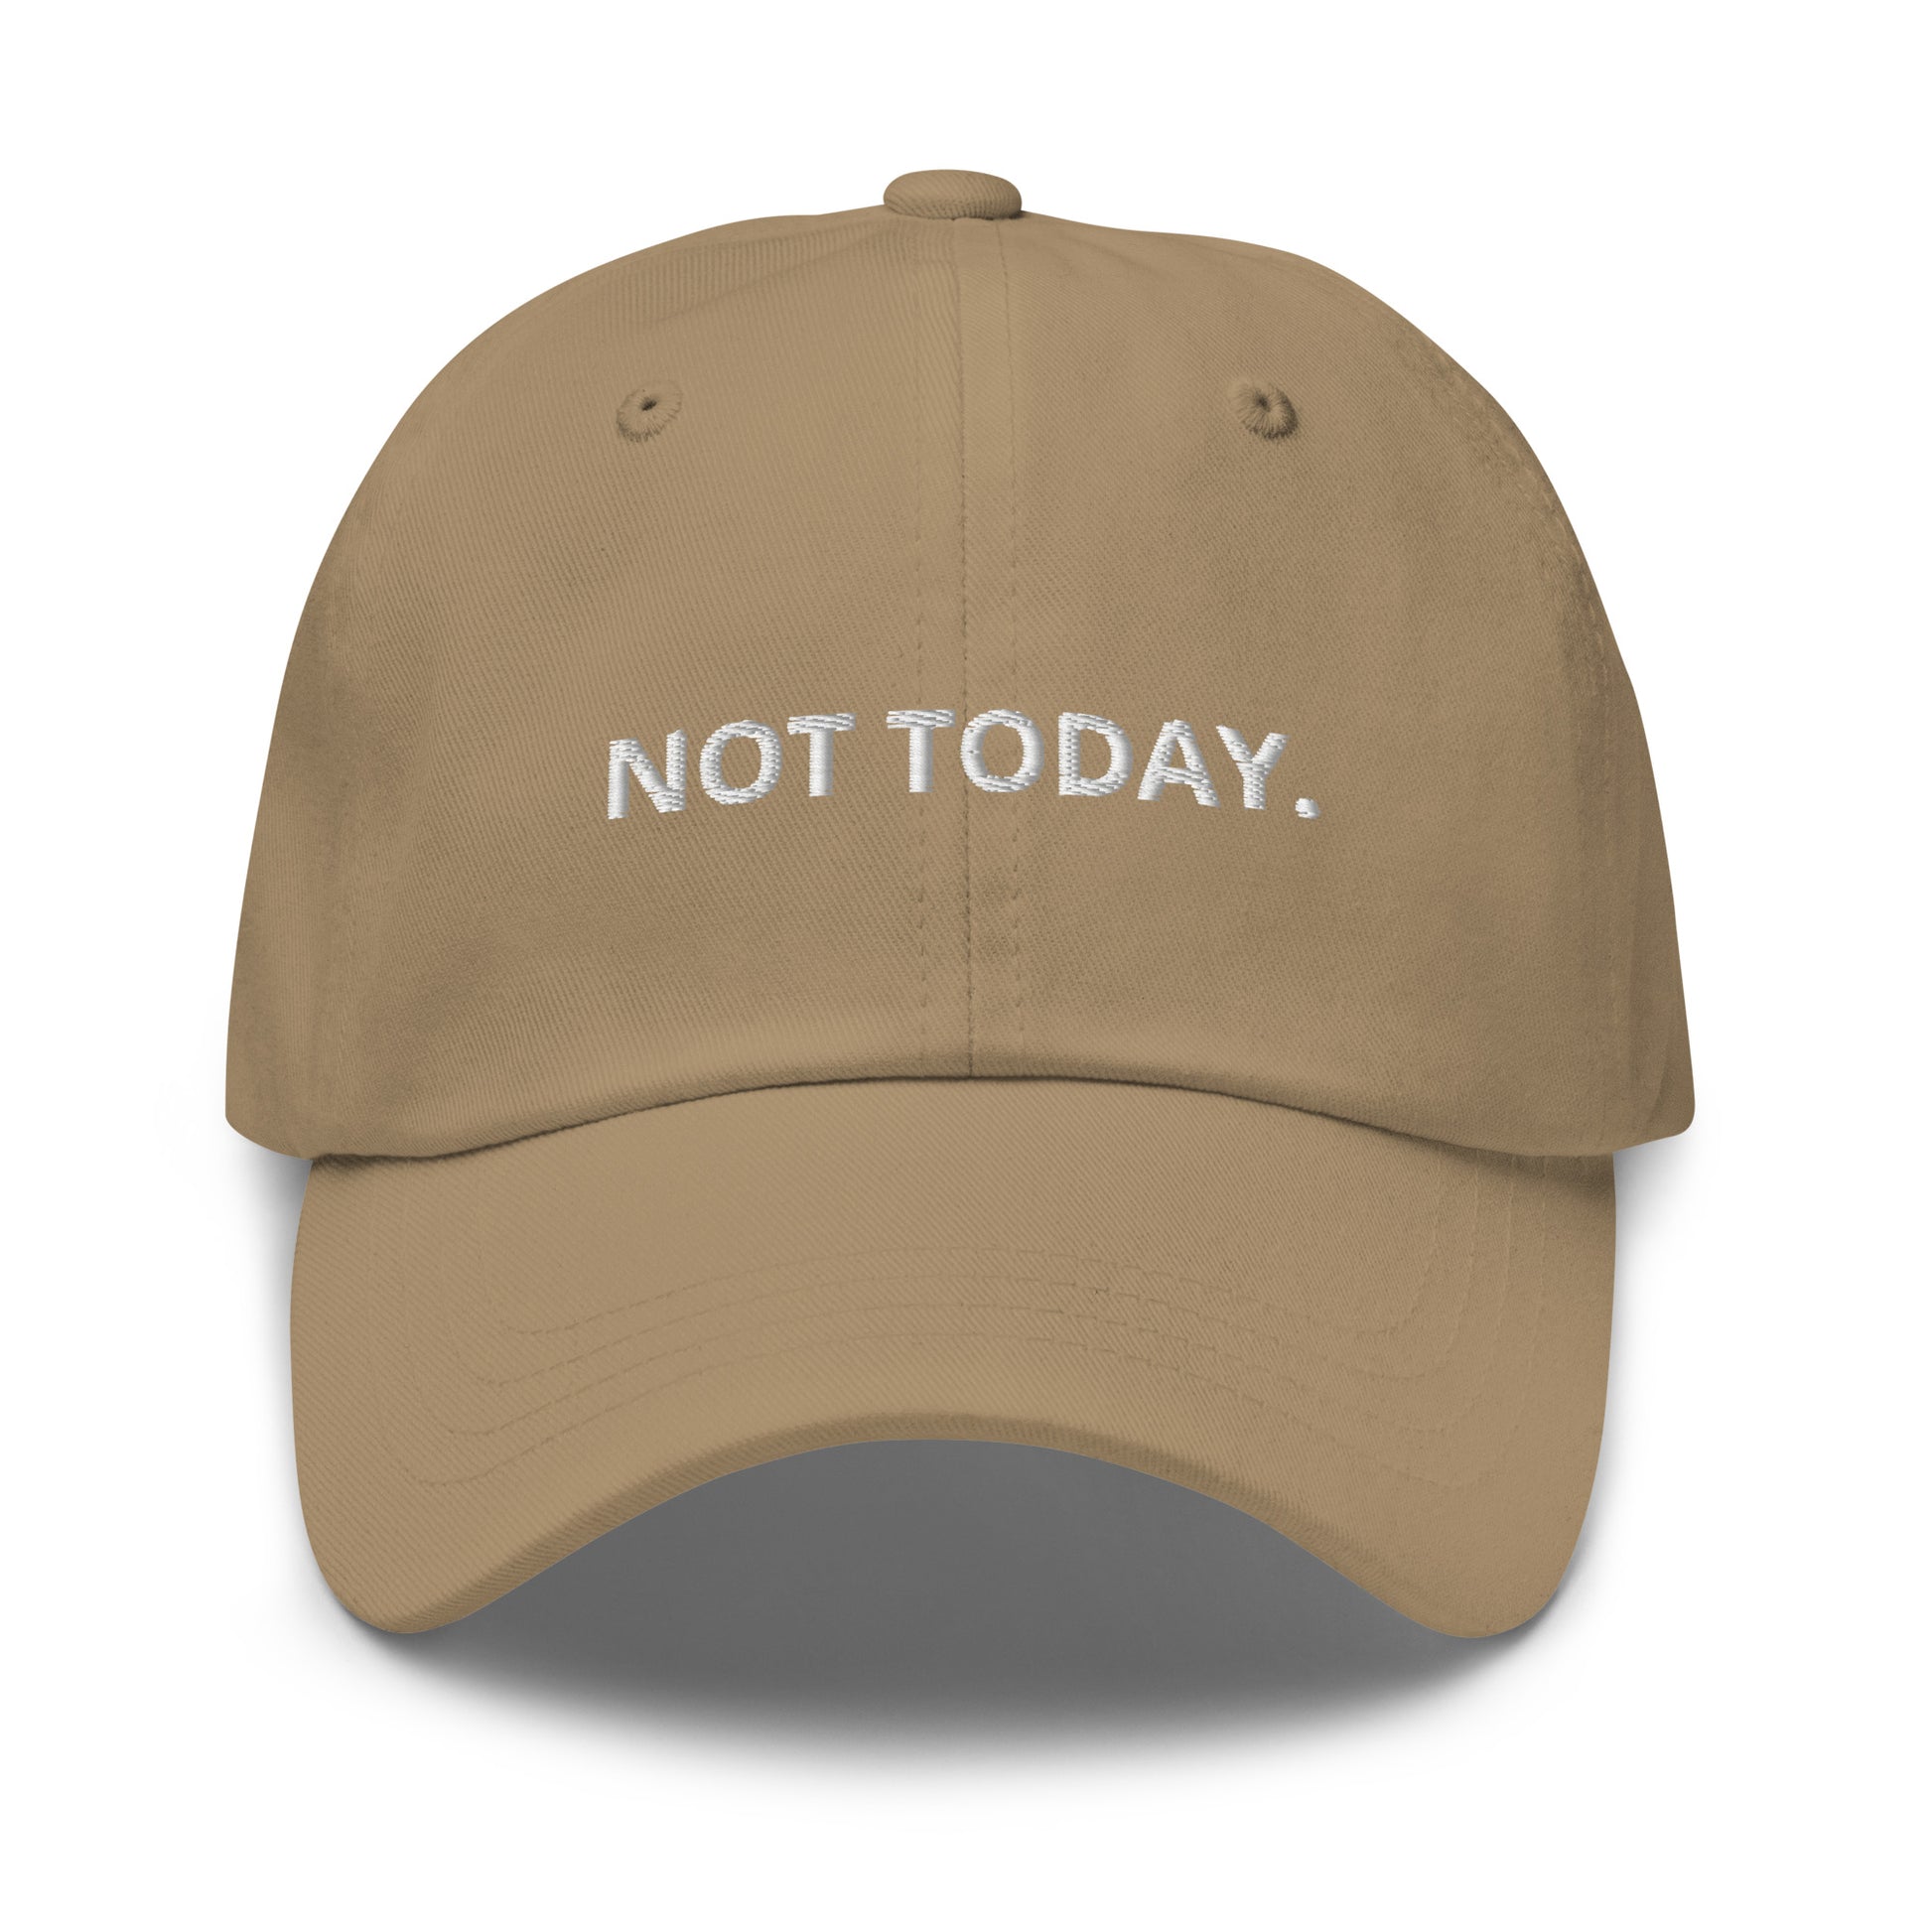 NOT TODAY. bestickte Baseball-Cap auf weißem Hintergrund.